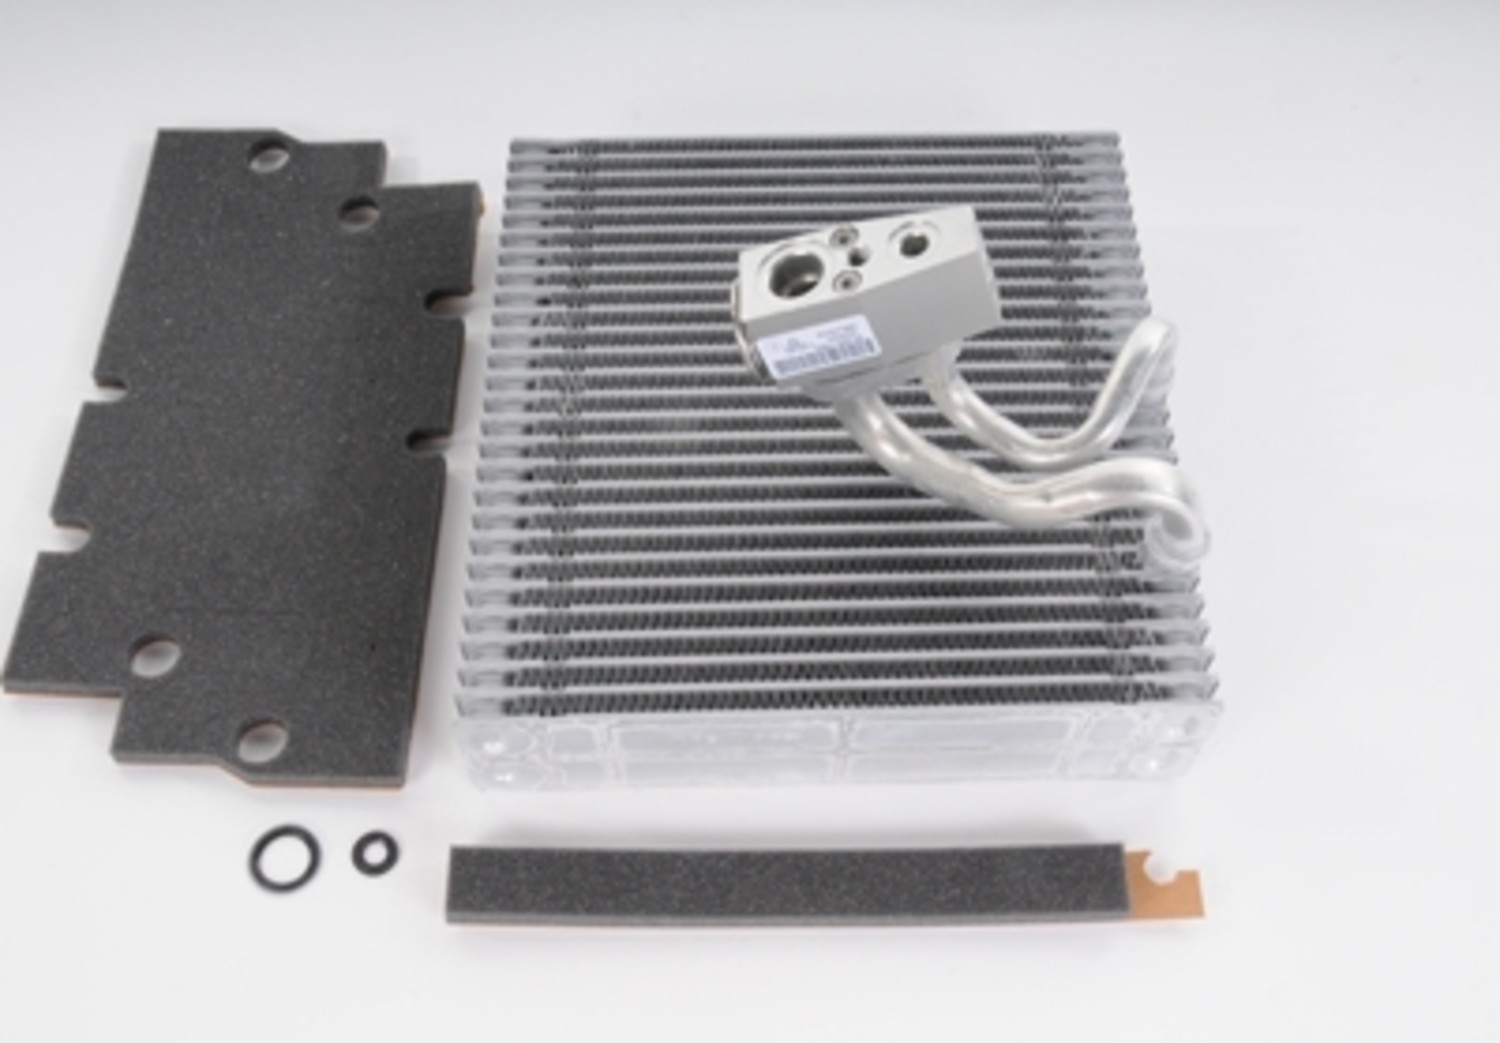 Foto de Kit del nucleo del evaporador del aire acondiciona para Chevrolet Cruze 2012 2015 Marca AC Delco Nmero de Parte #15-63726